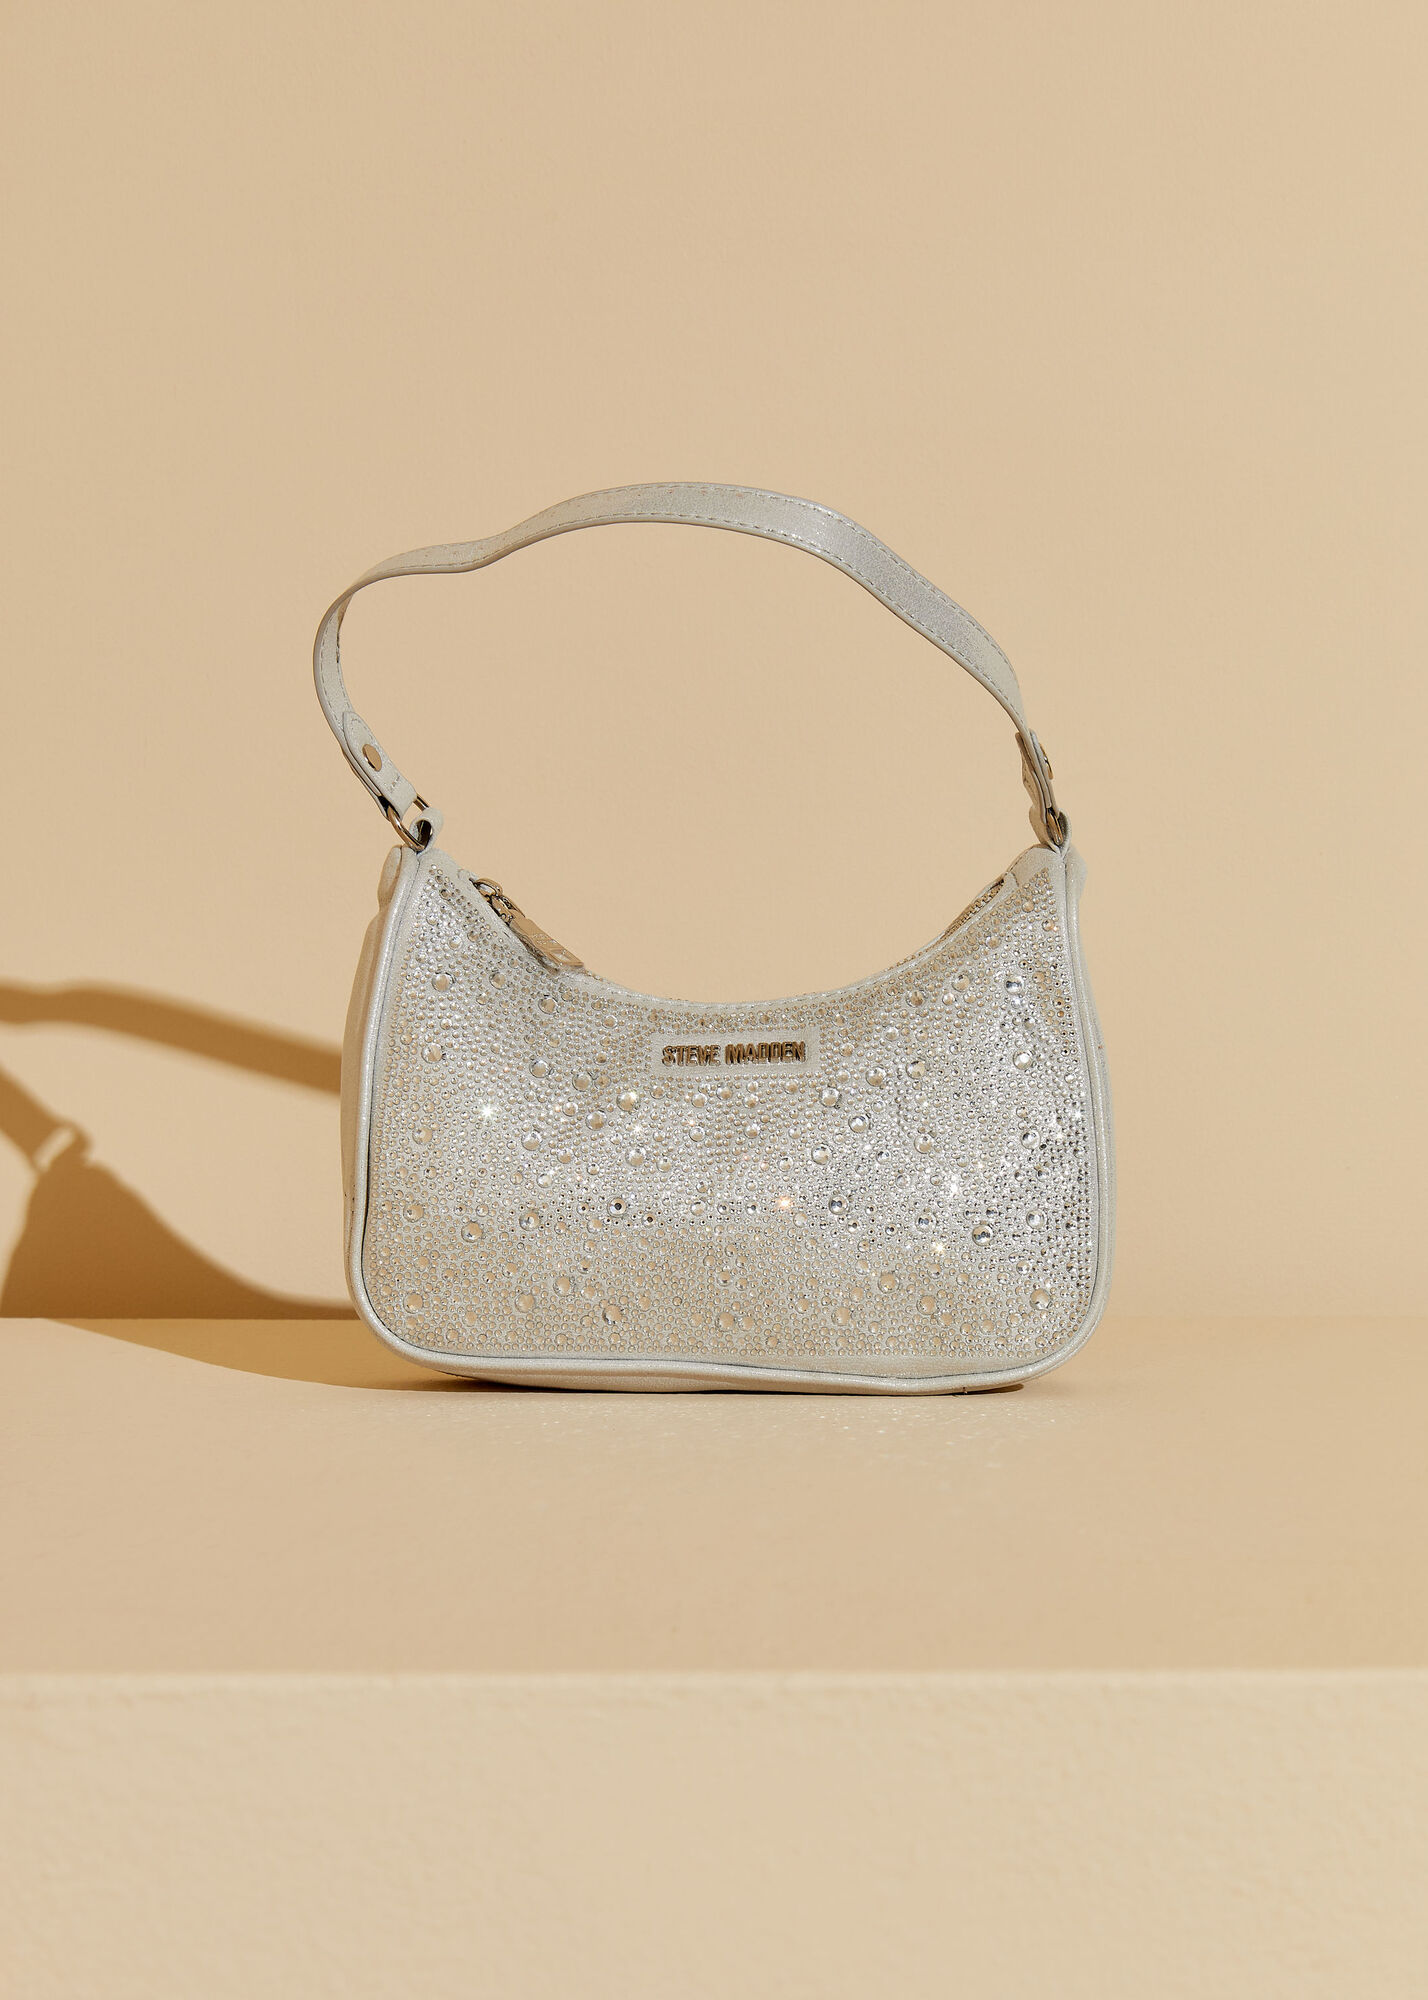 Designer Steve Madden BPauli shoulder bag 90s fashion silver bags